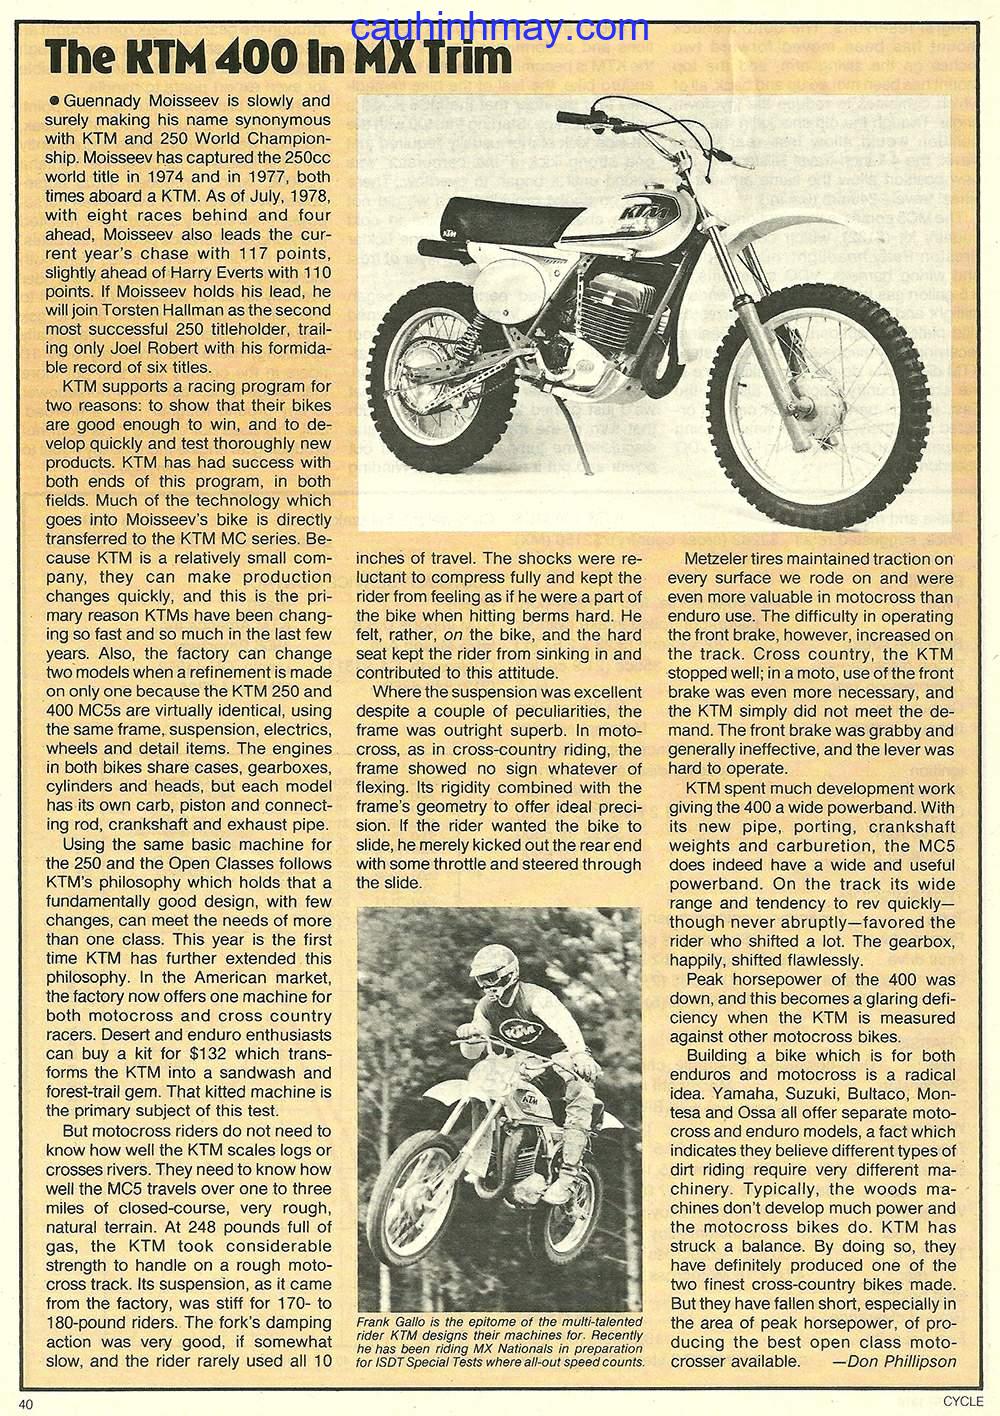 1980 KTM 350 ENDURO - cauhinhmay.com